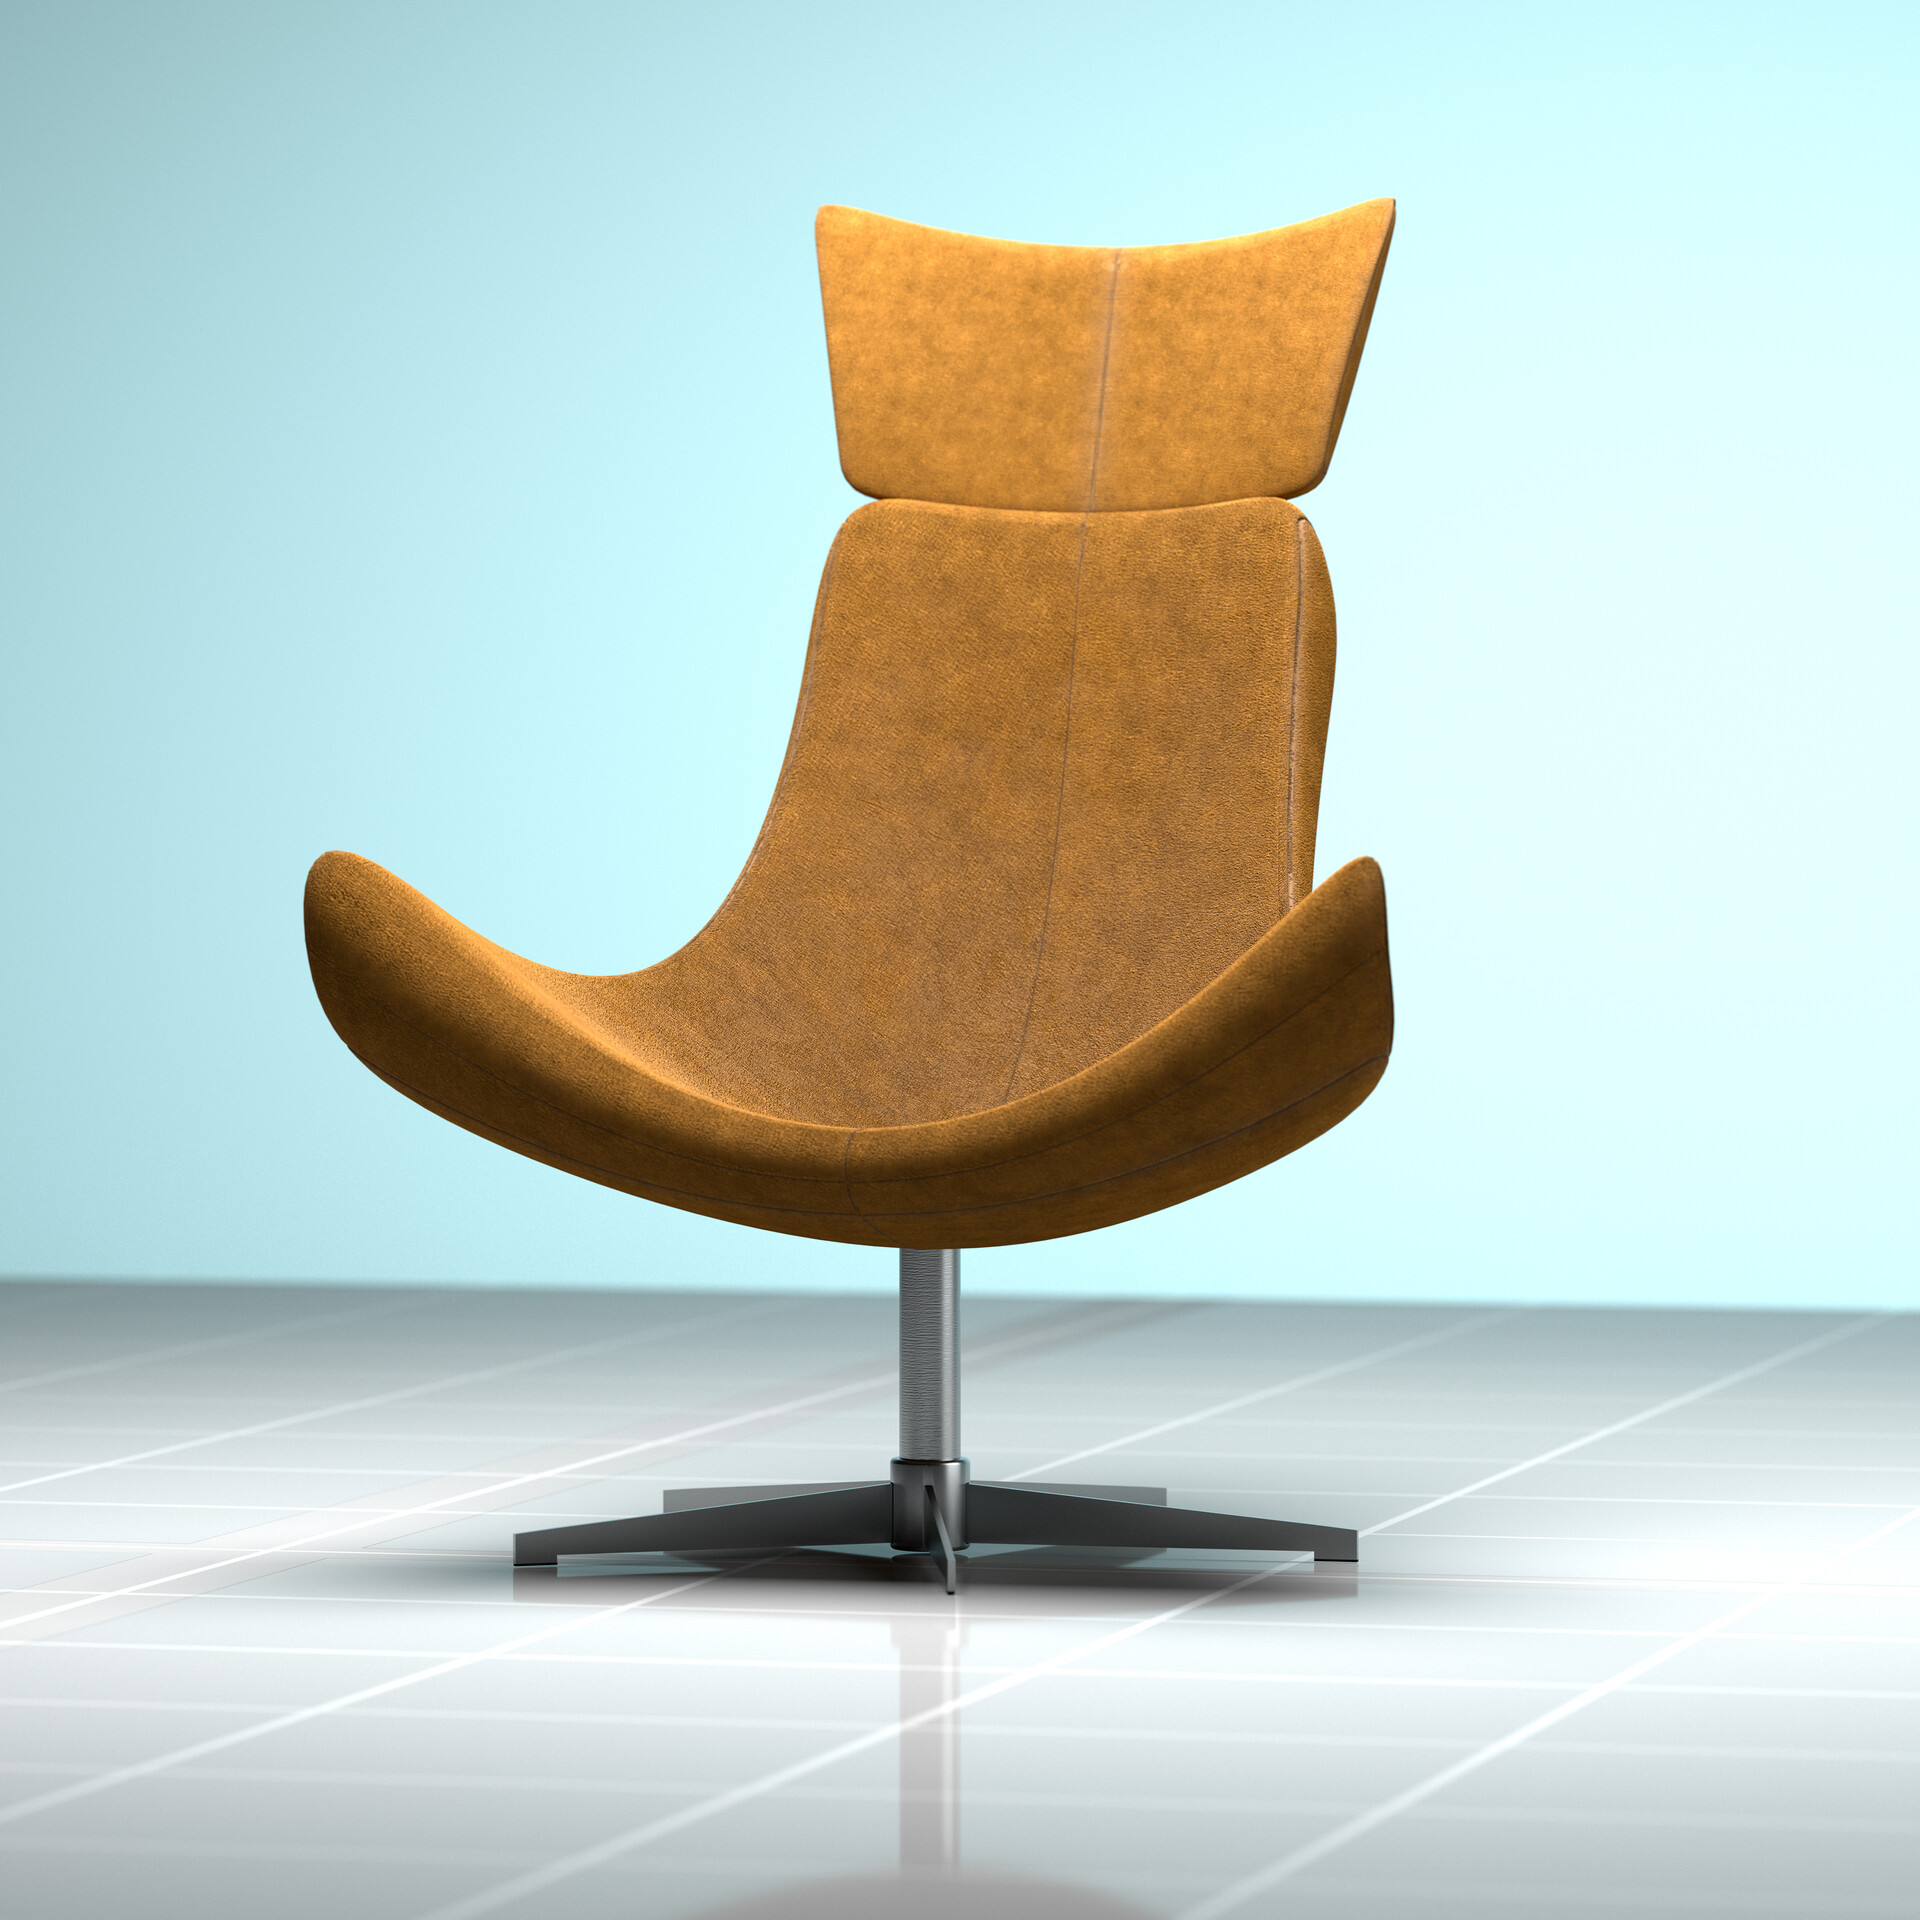 Middeleeuws zonne duurzame grondstof ArtStation - Chair